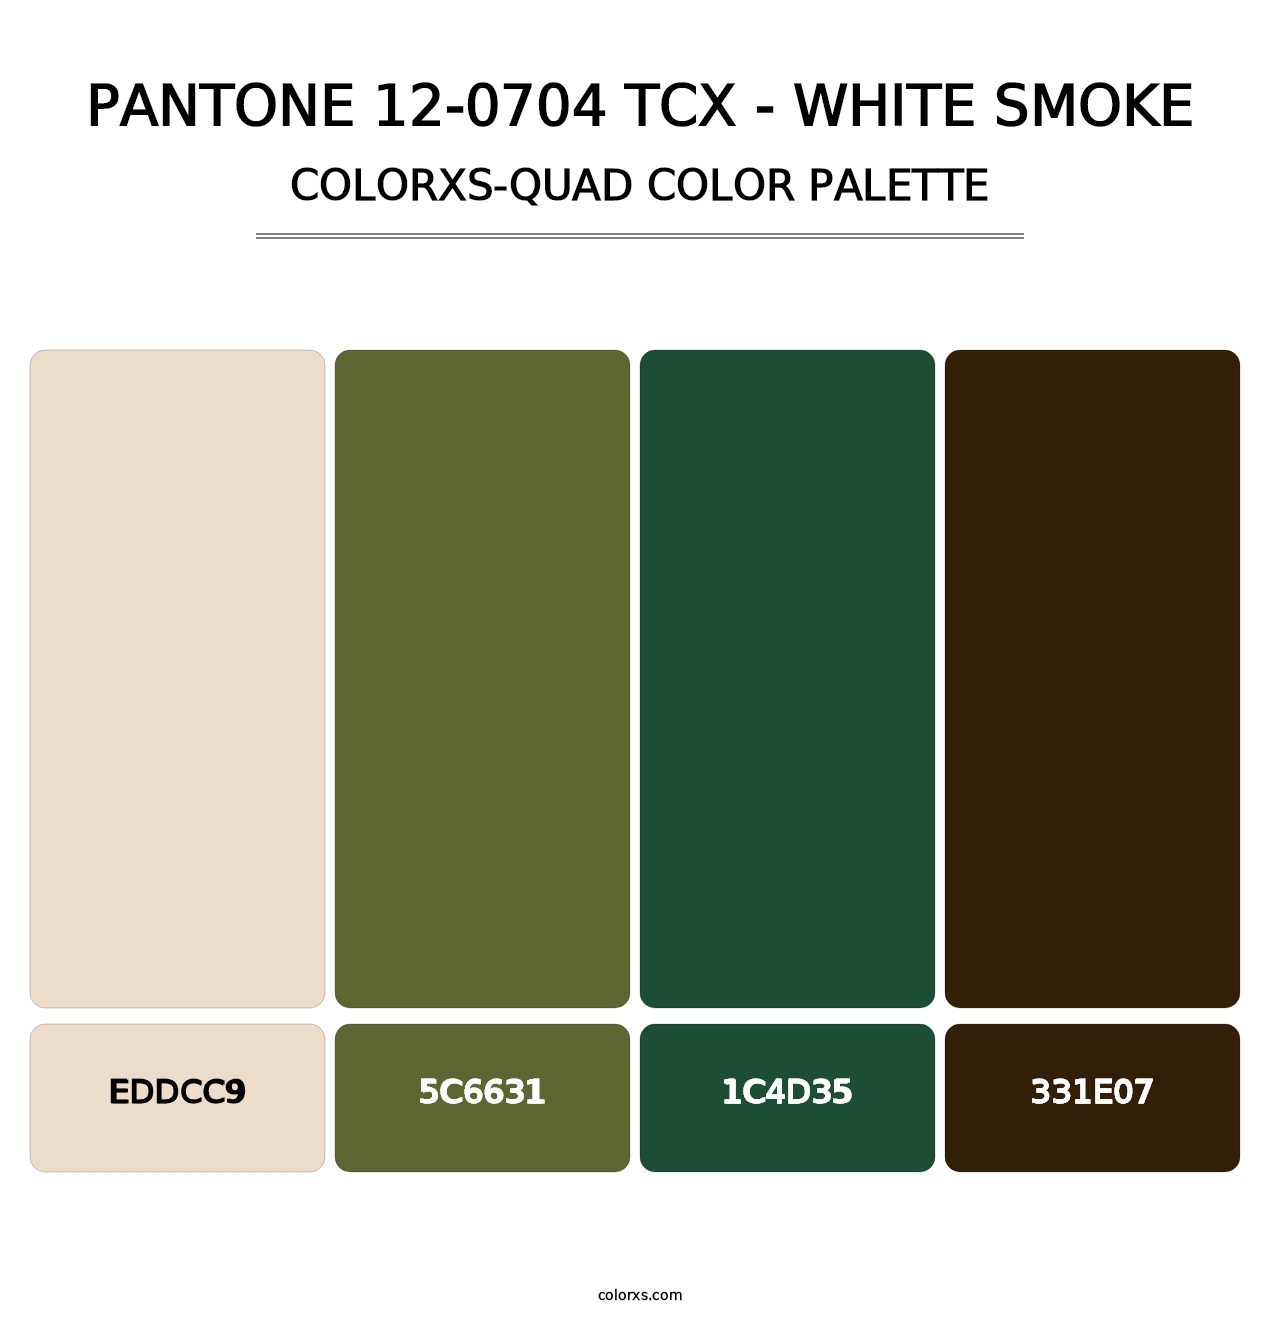 PANTONE 12-0704 TCX - White Smoke - Colorxs Quad Palette